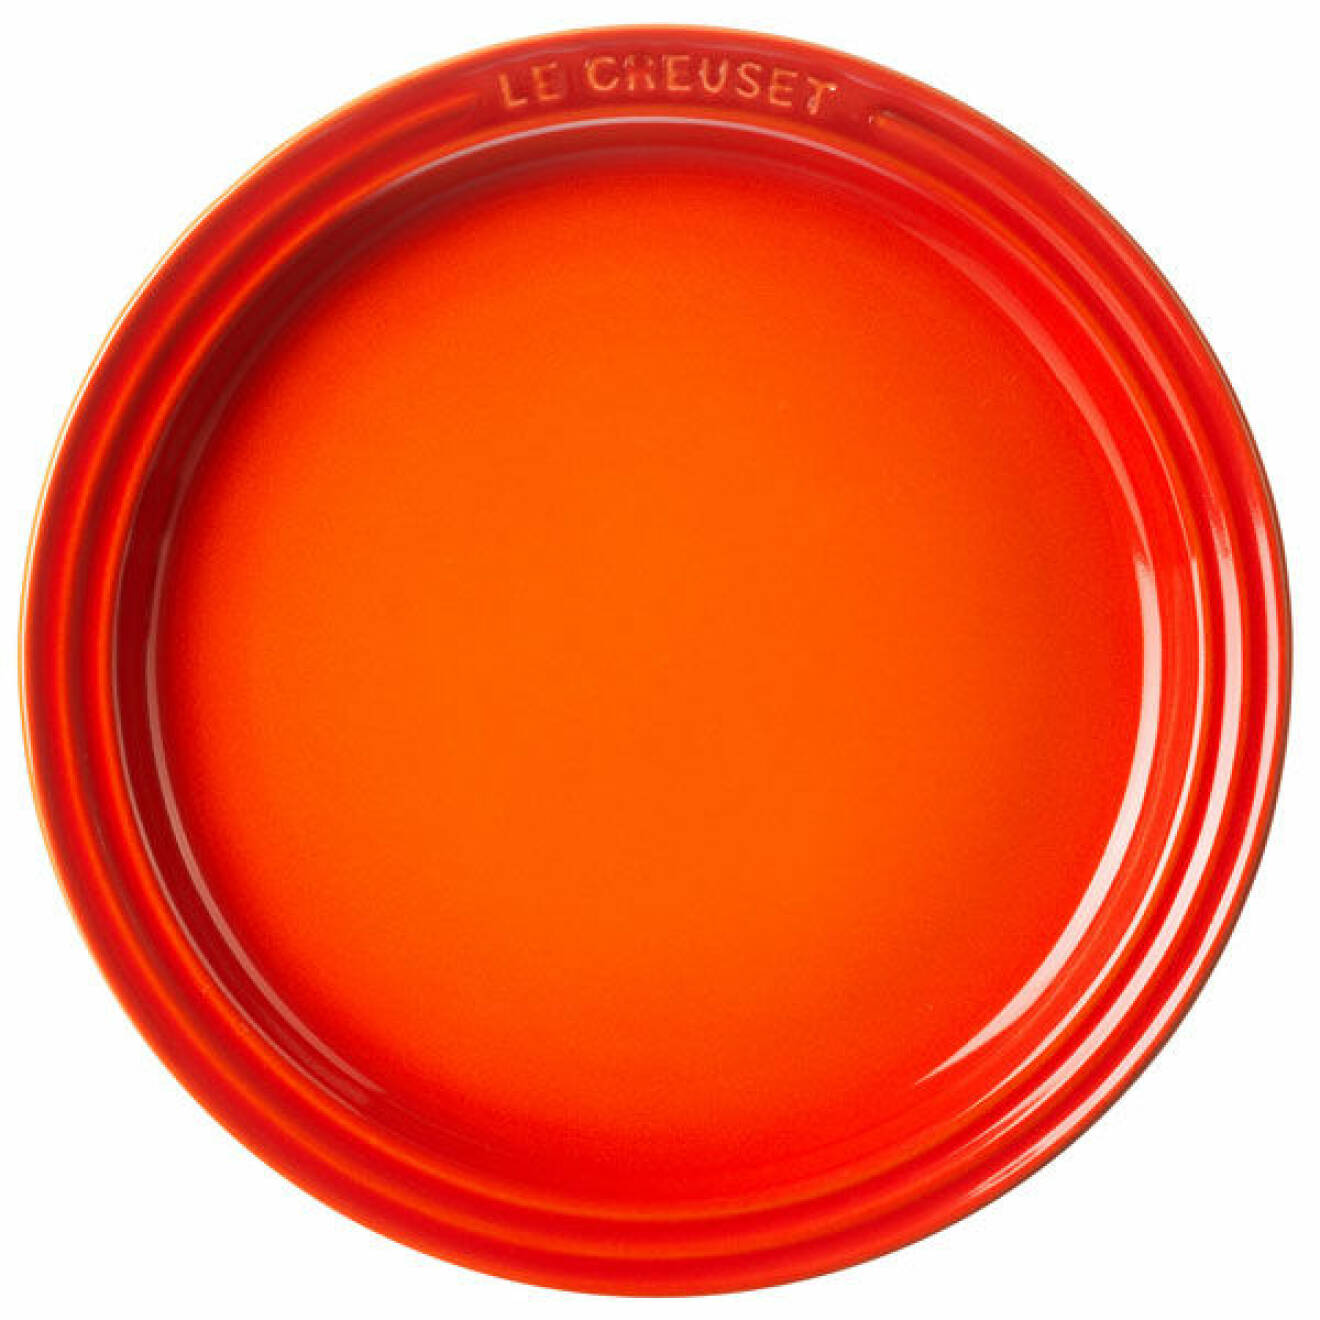 Le Creusets tallrik i eldigt orange.